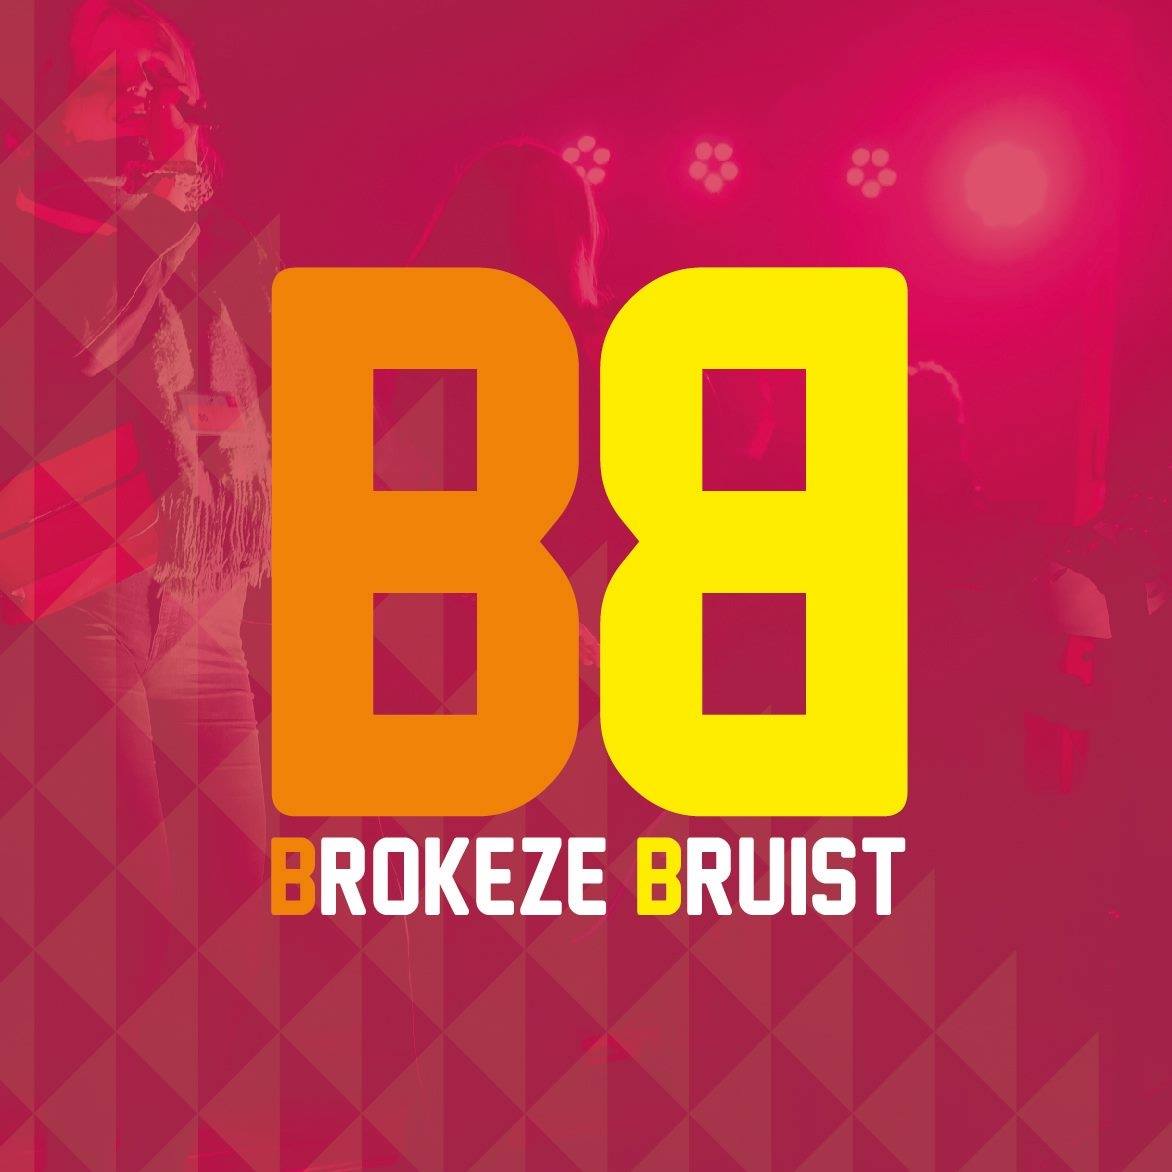 Brokeze Bruist logo